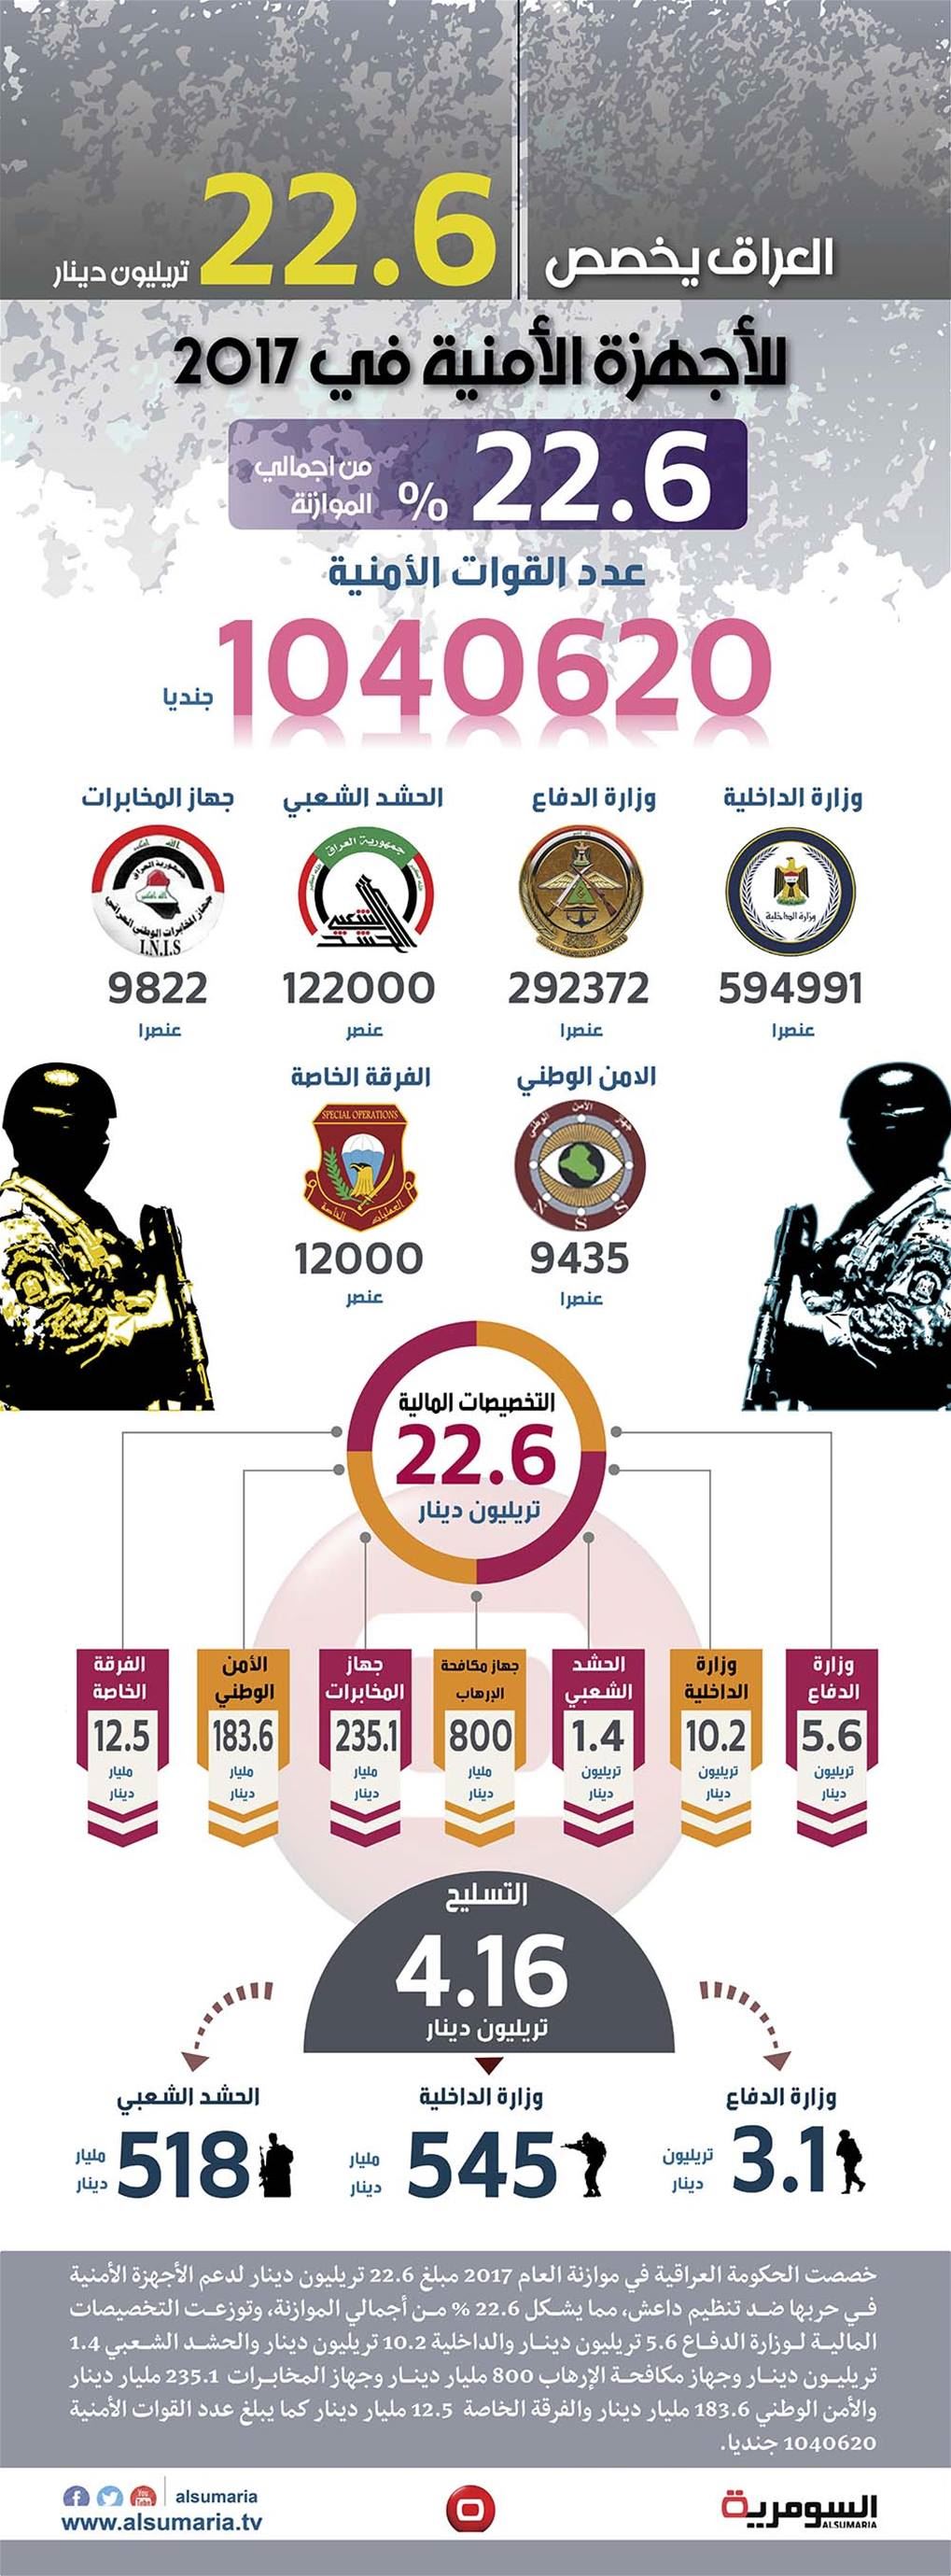 بالانفوغراف.. العراق يخصص 22.6 تريليون دينار لمحاربة داعش 